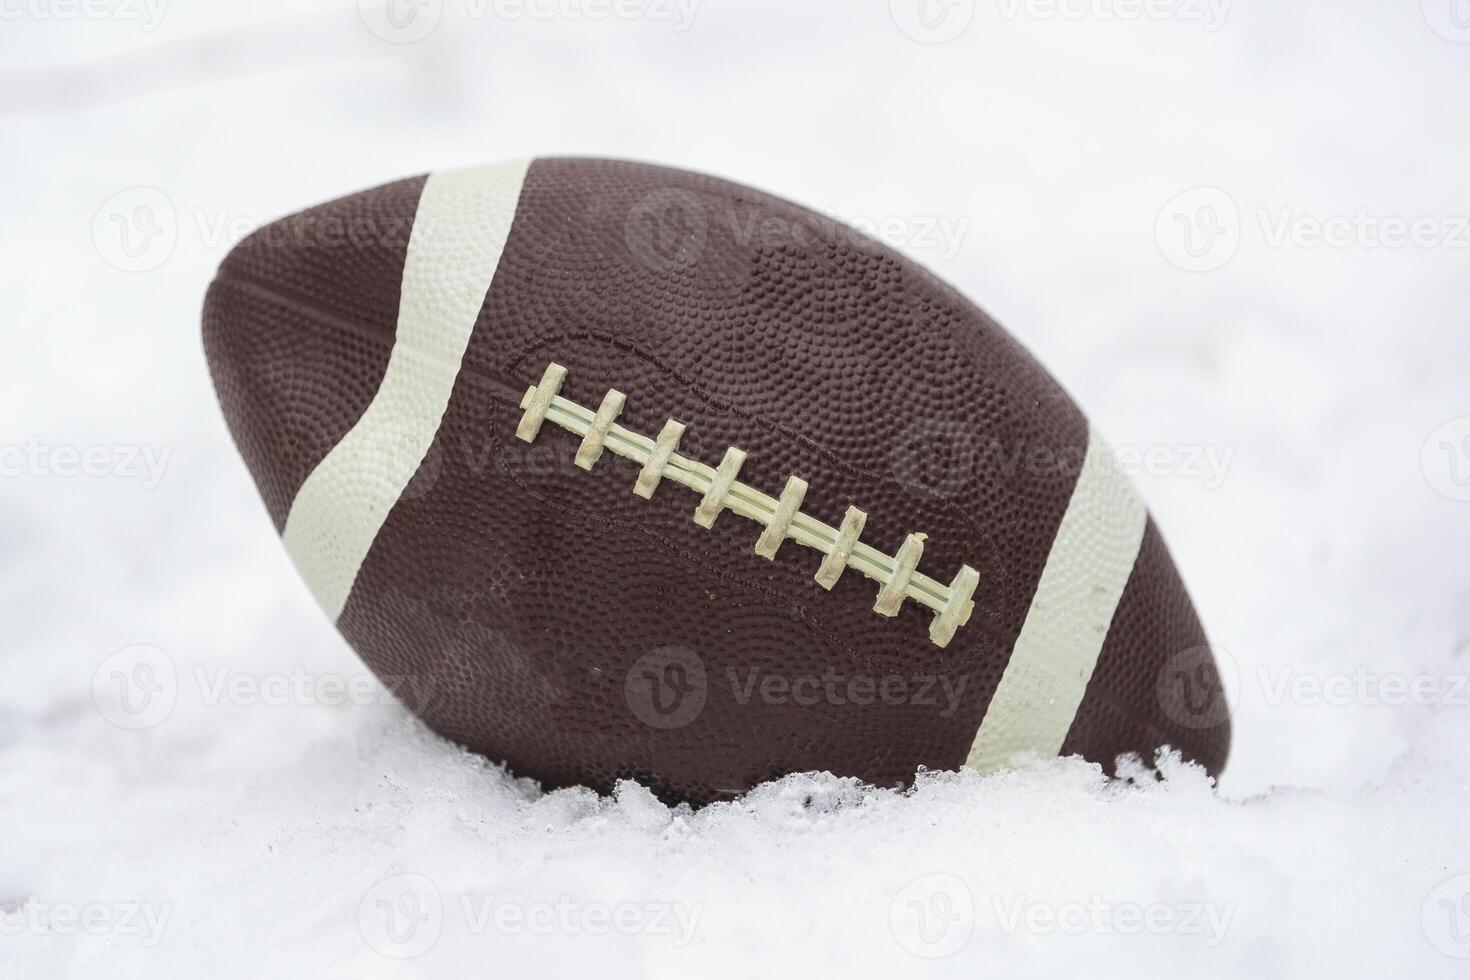 une Football couvert avec neige et pose dans le neige photo